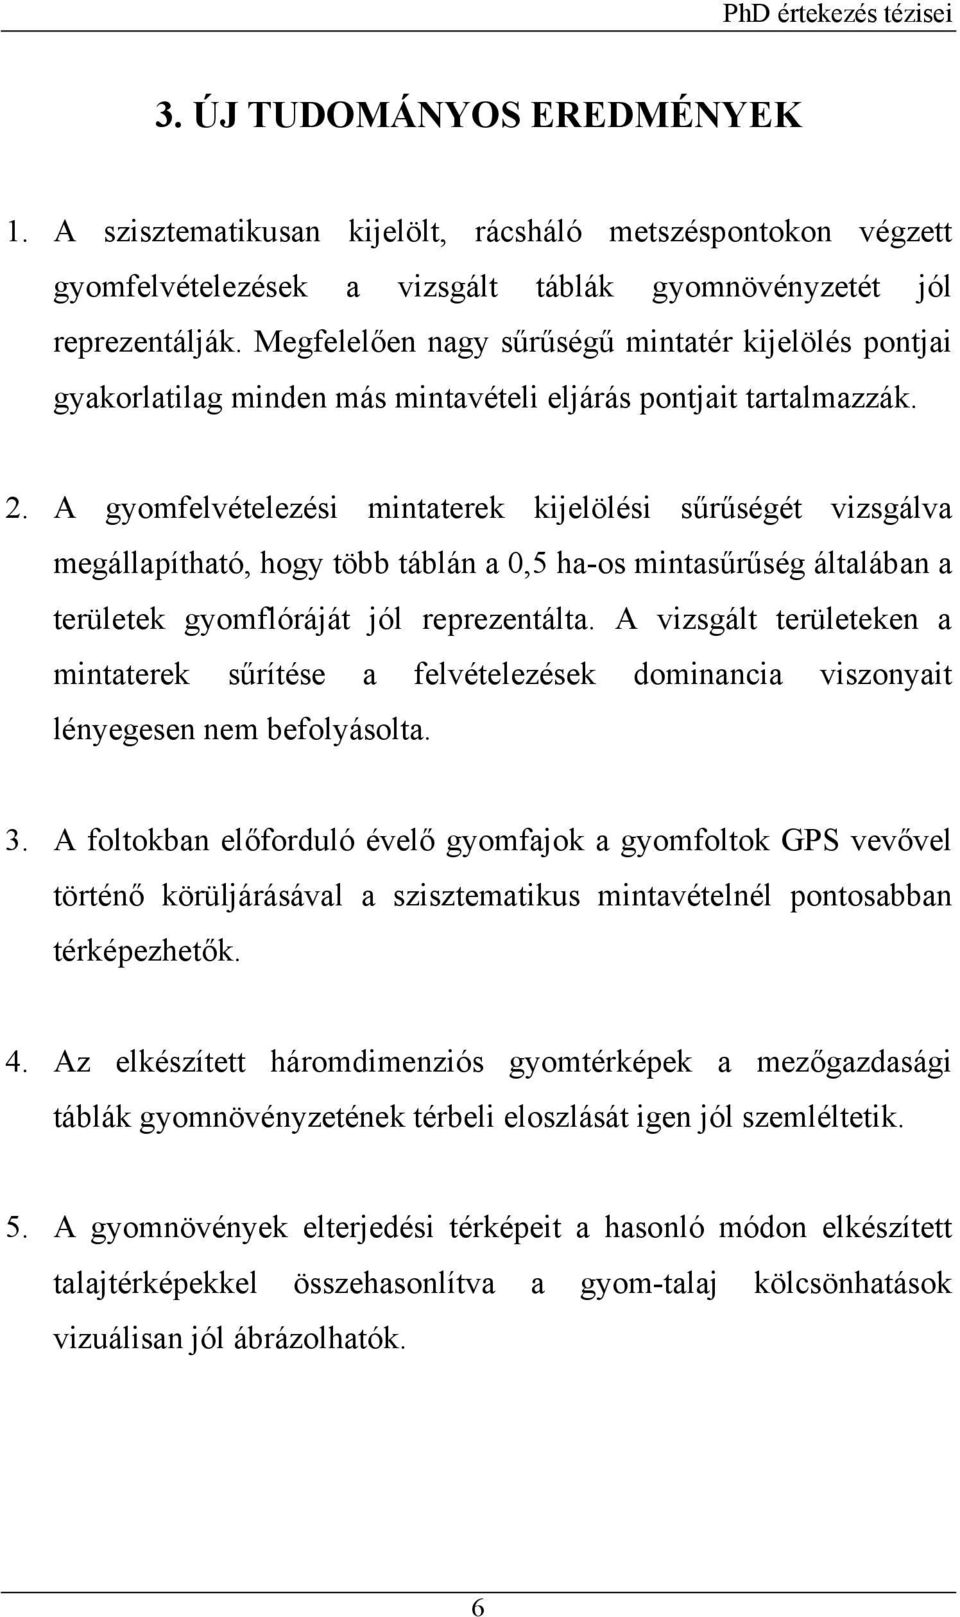 DOKTORI (PhD) ÉRTEKEZÉS TÉZISEI - PDF Ingyenes letöltés